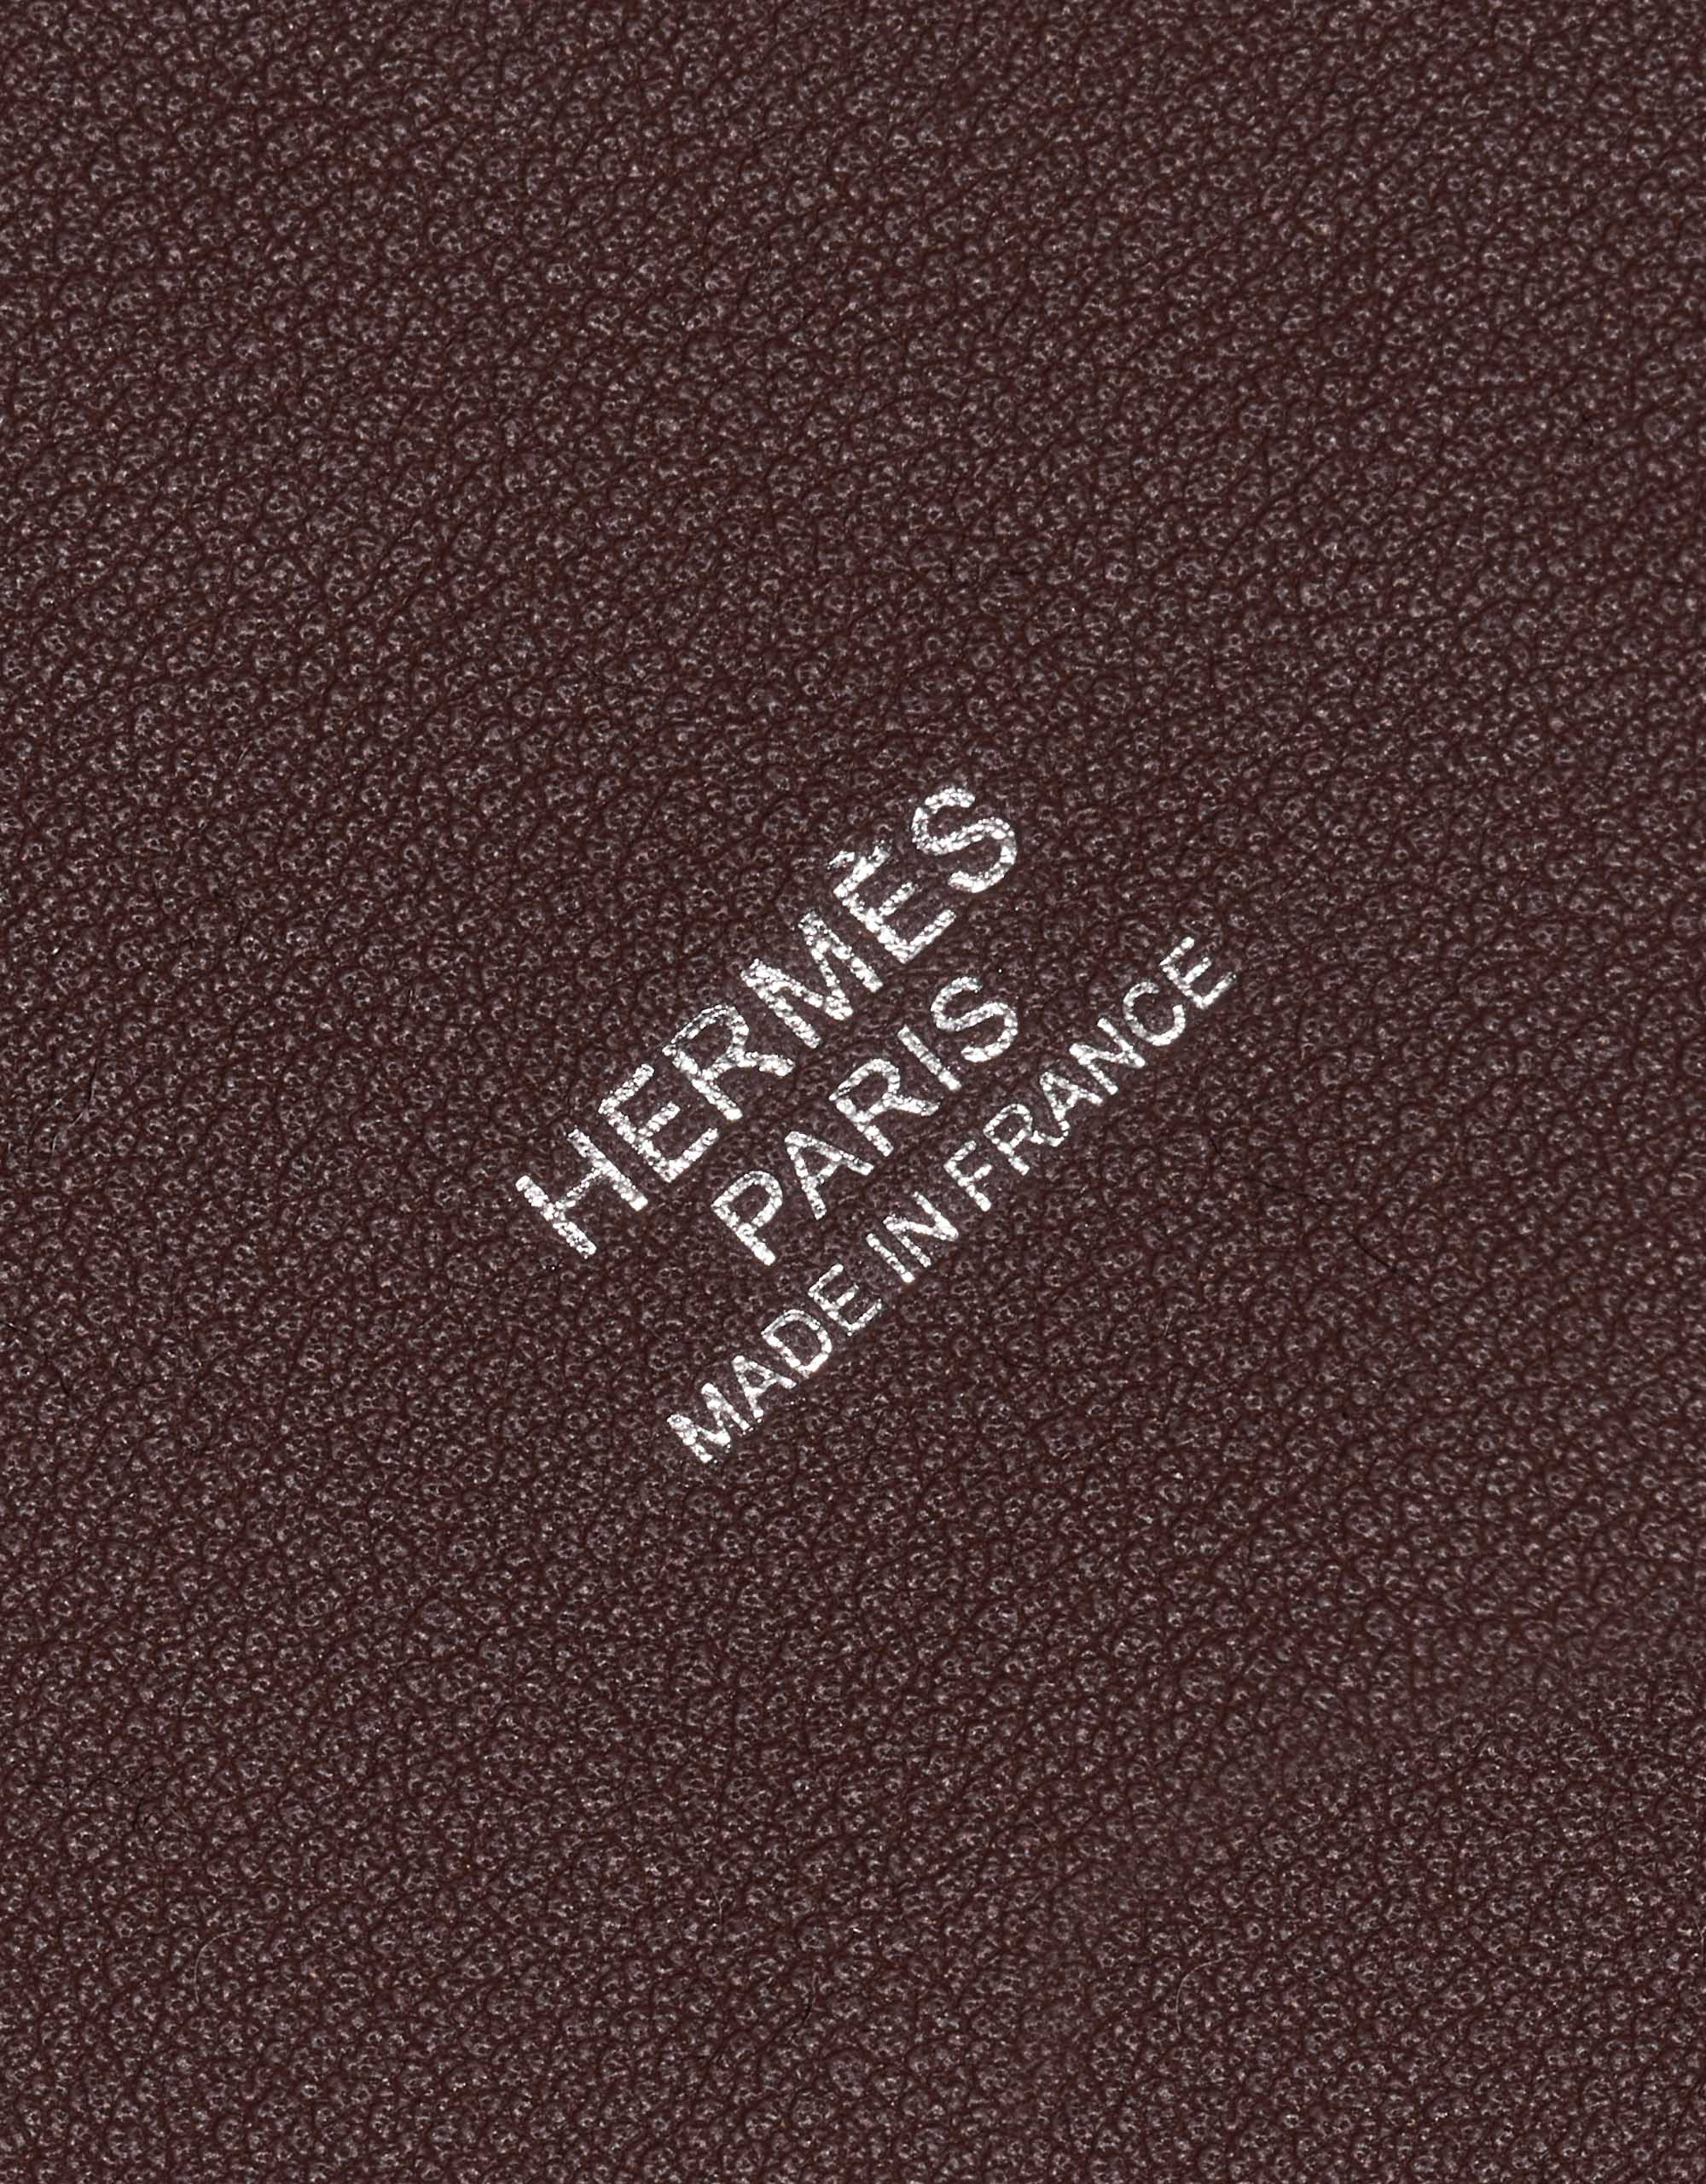 Gebrauchte Hermès Tasche Picotin 18 Filzschutz / Swift Gris Moyen / Havane Brown, Grey Logo | Verkaufen Sie Ihre Designer-Tasche auf Saclab.com